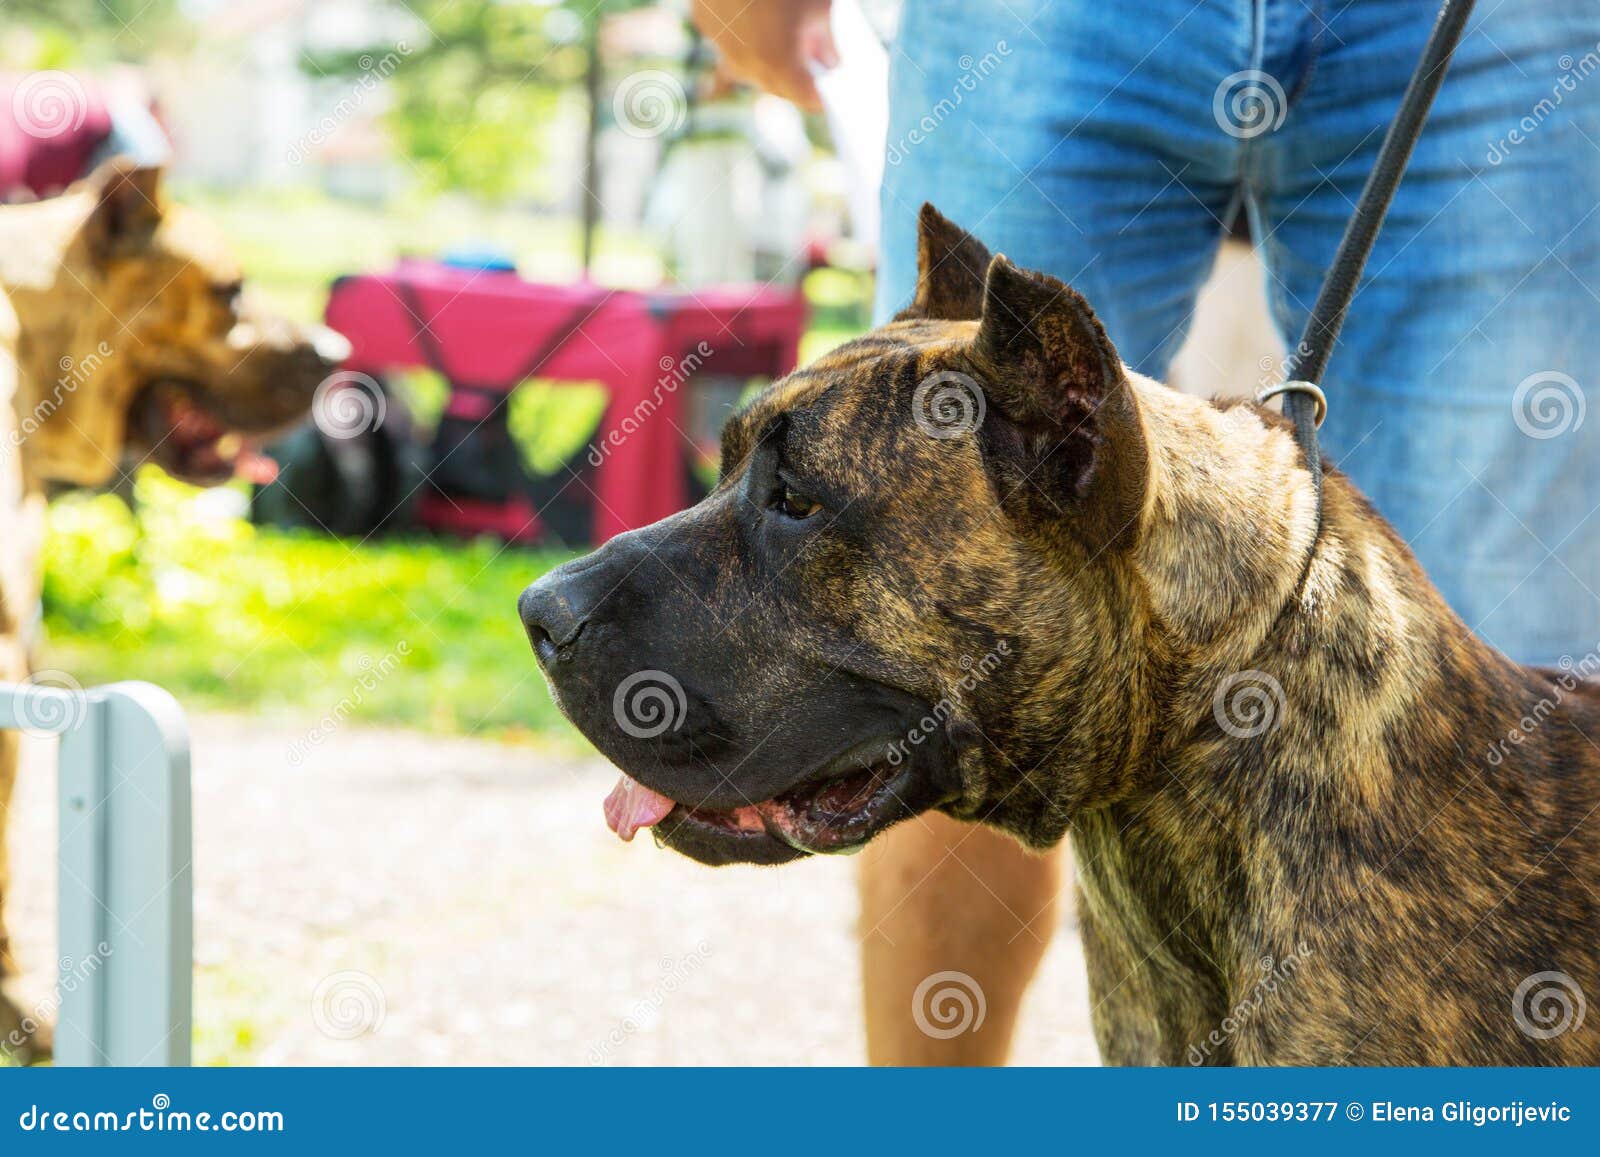 dogo canario, perro de presa canario puppy dog with owner in park